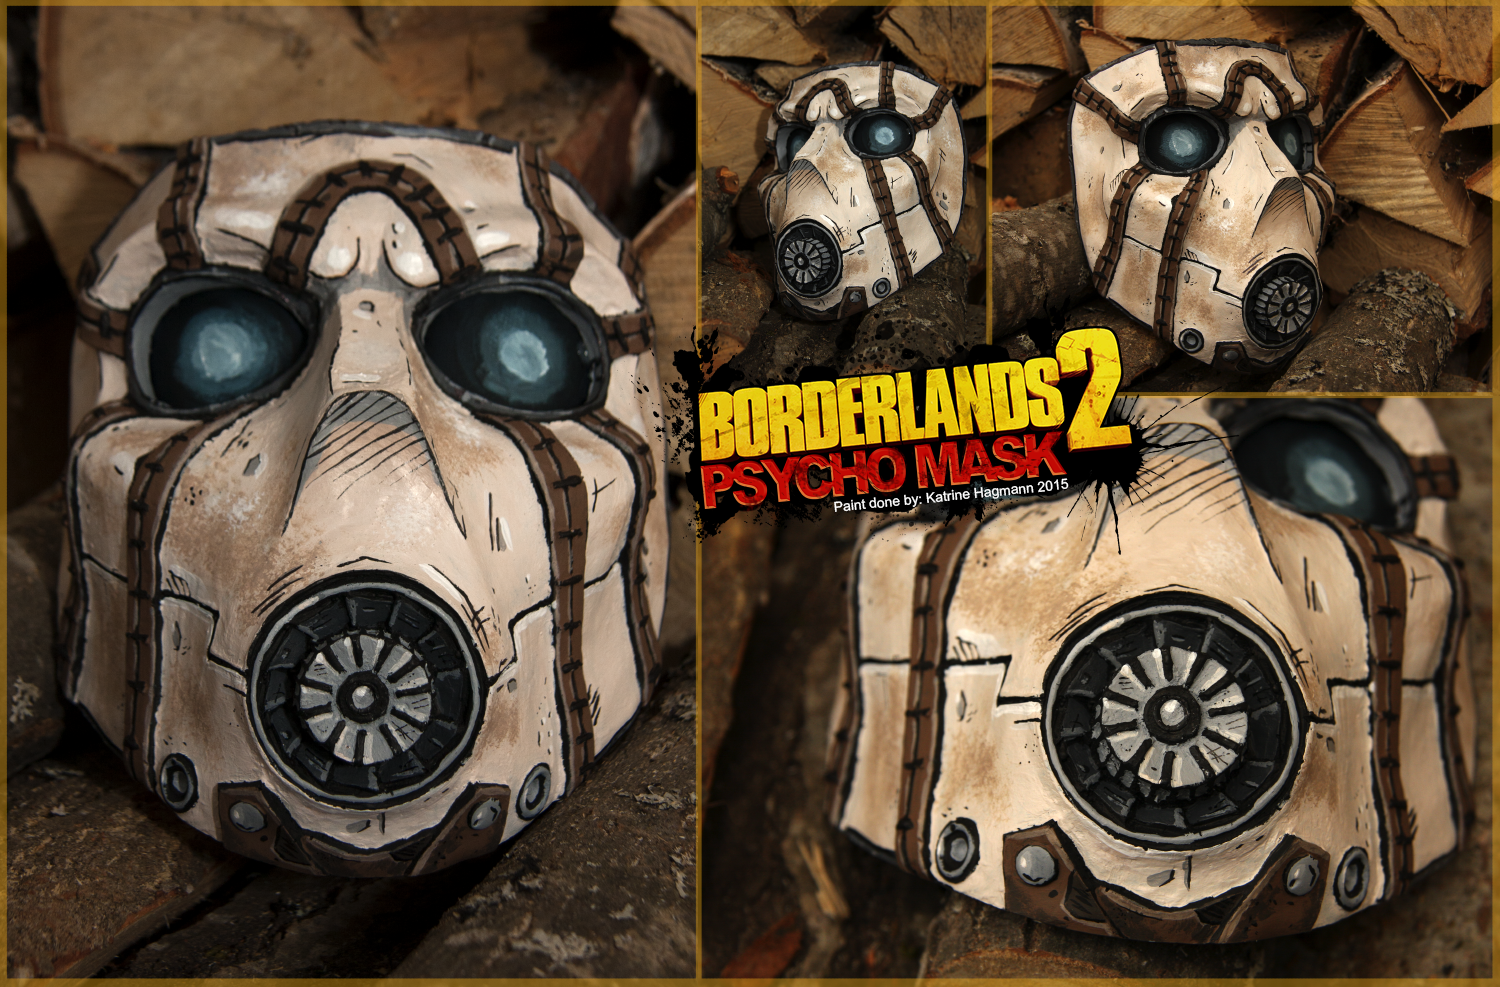 Borderlands 2 Psycho mask